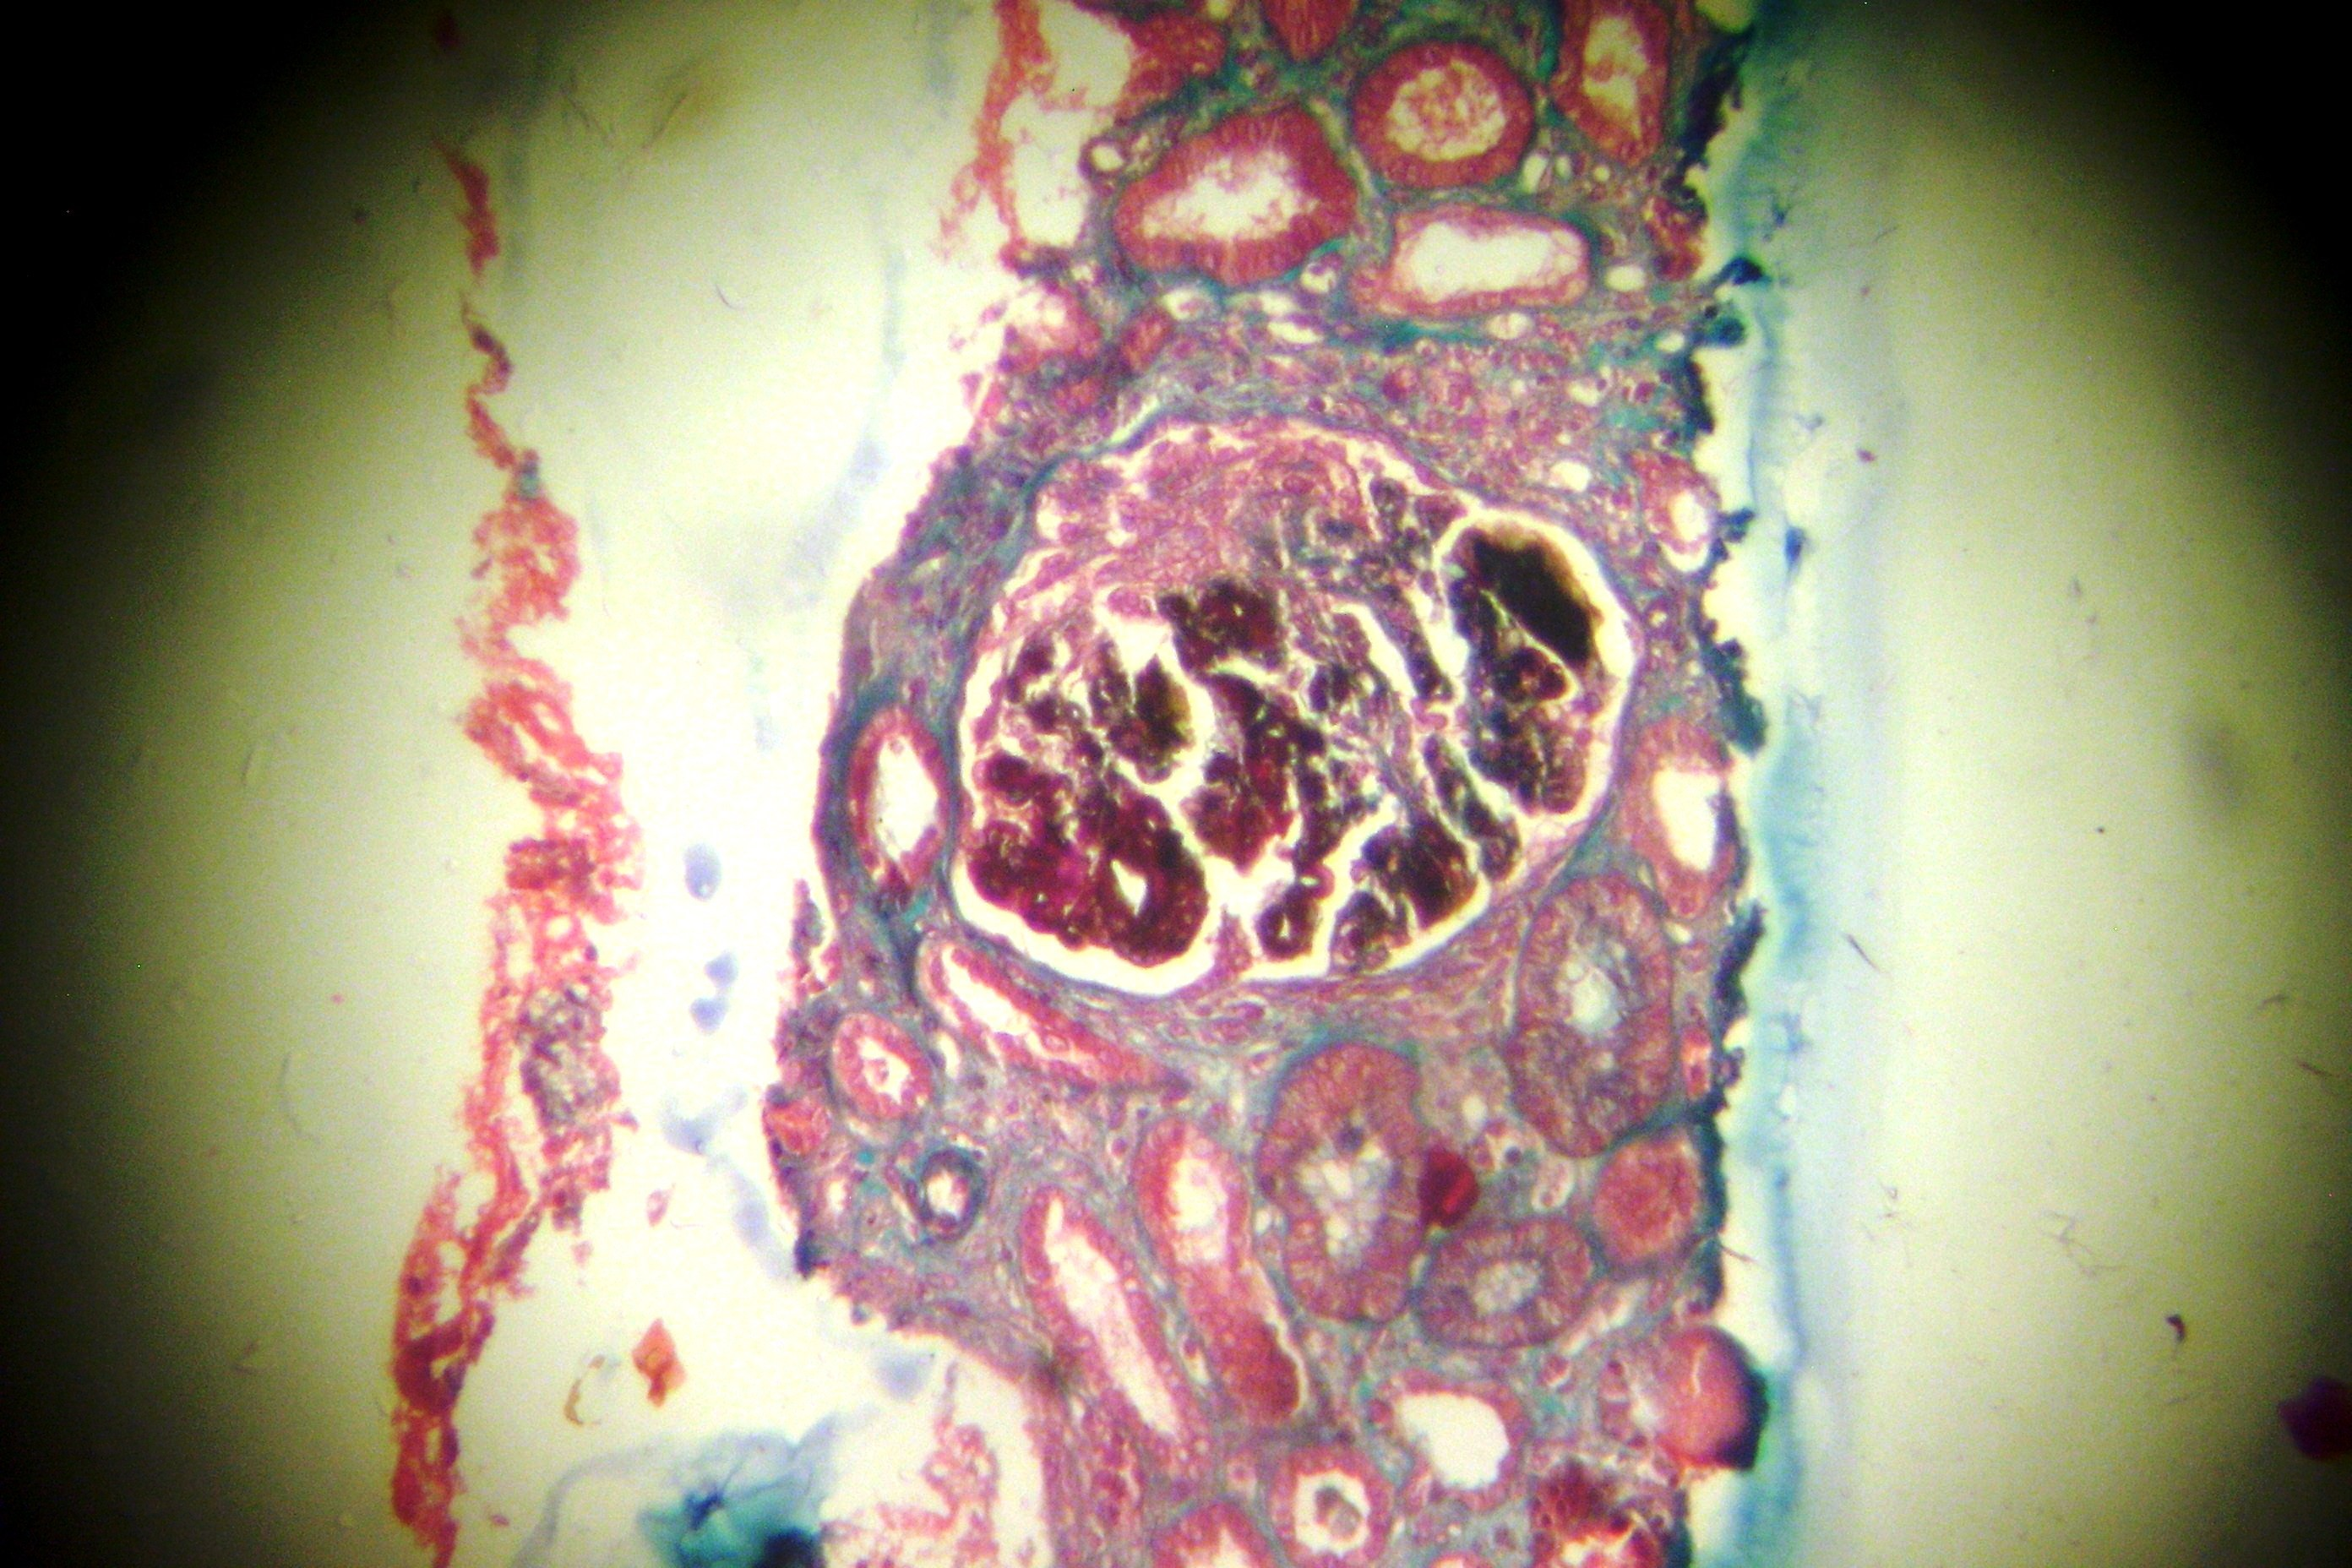 Células mesangiais com discreta proliferação global e difusa sem expansão. Apenas 1 glomérulo mostra rotura da membrana basal com formação de crescente epitelial em forma de semi-lua.